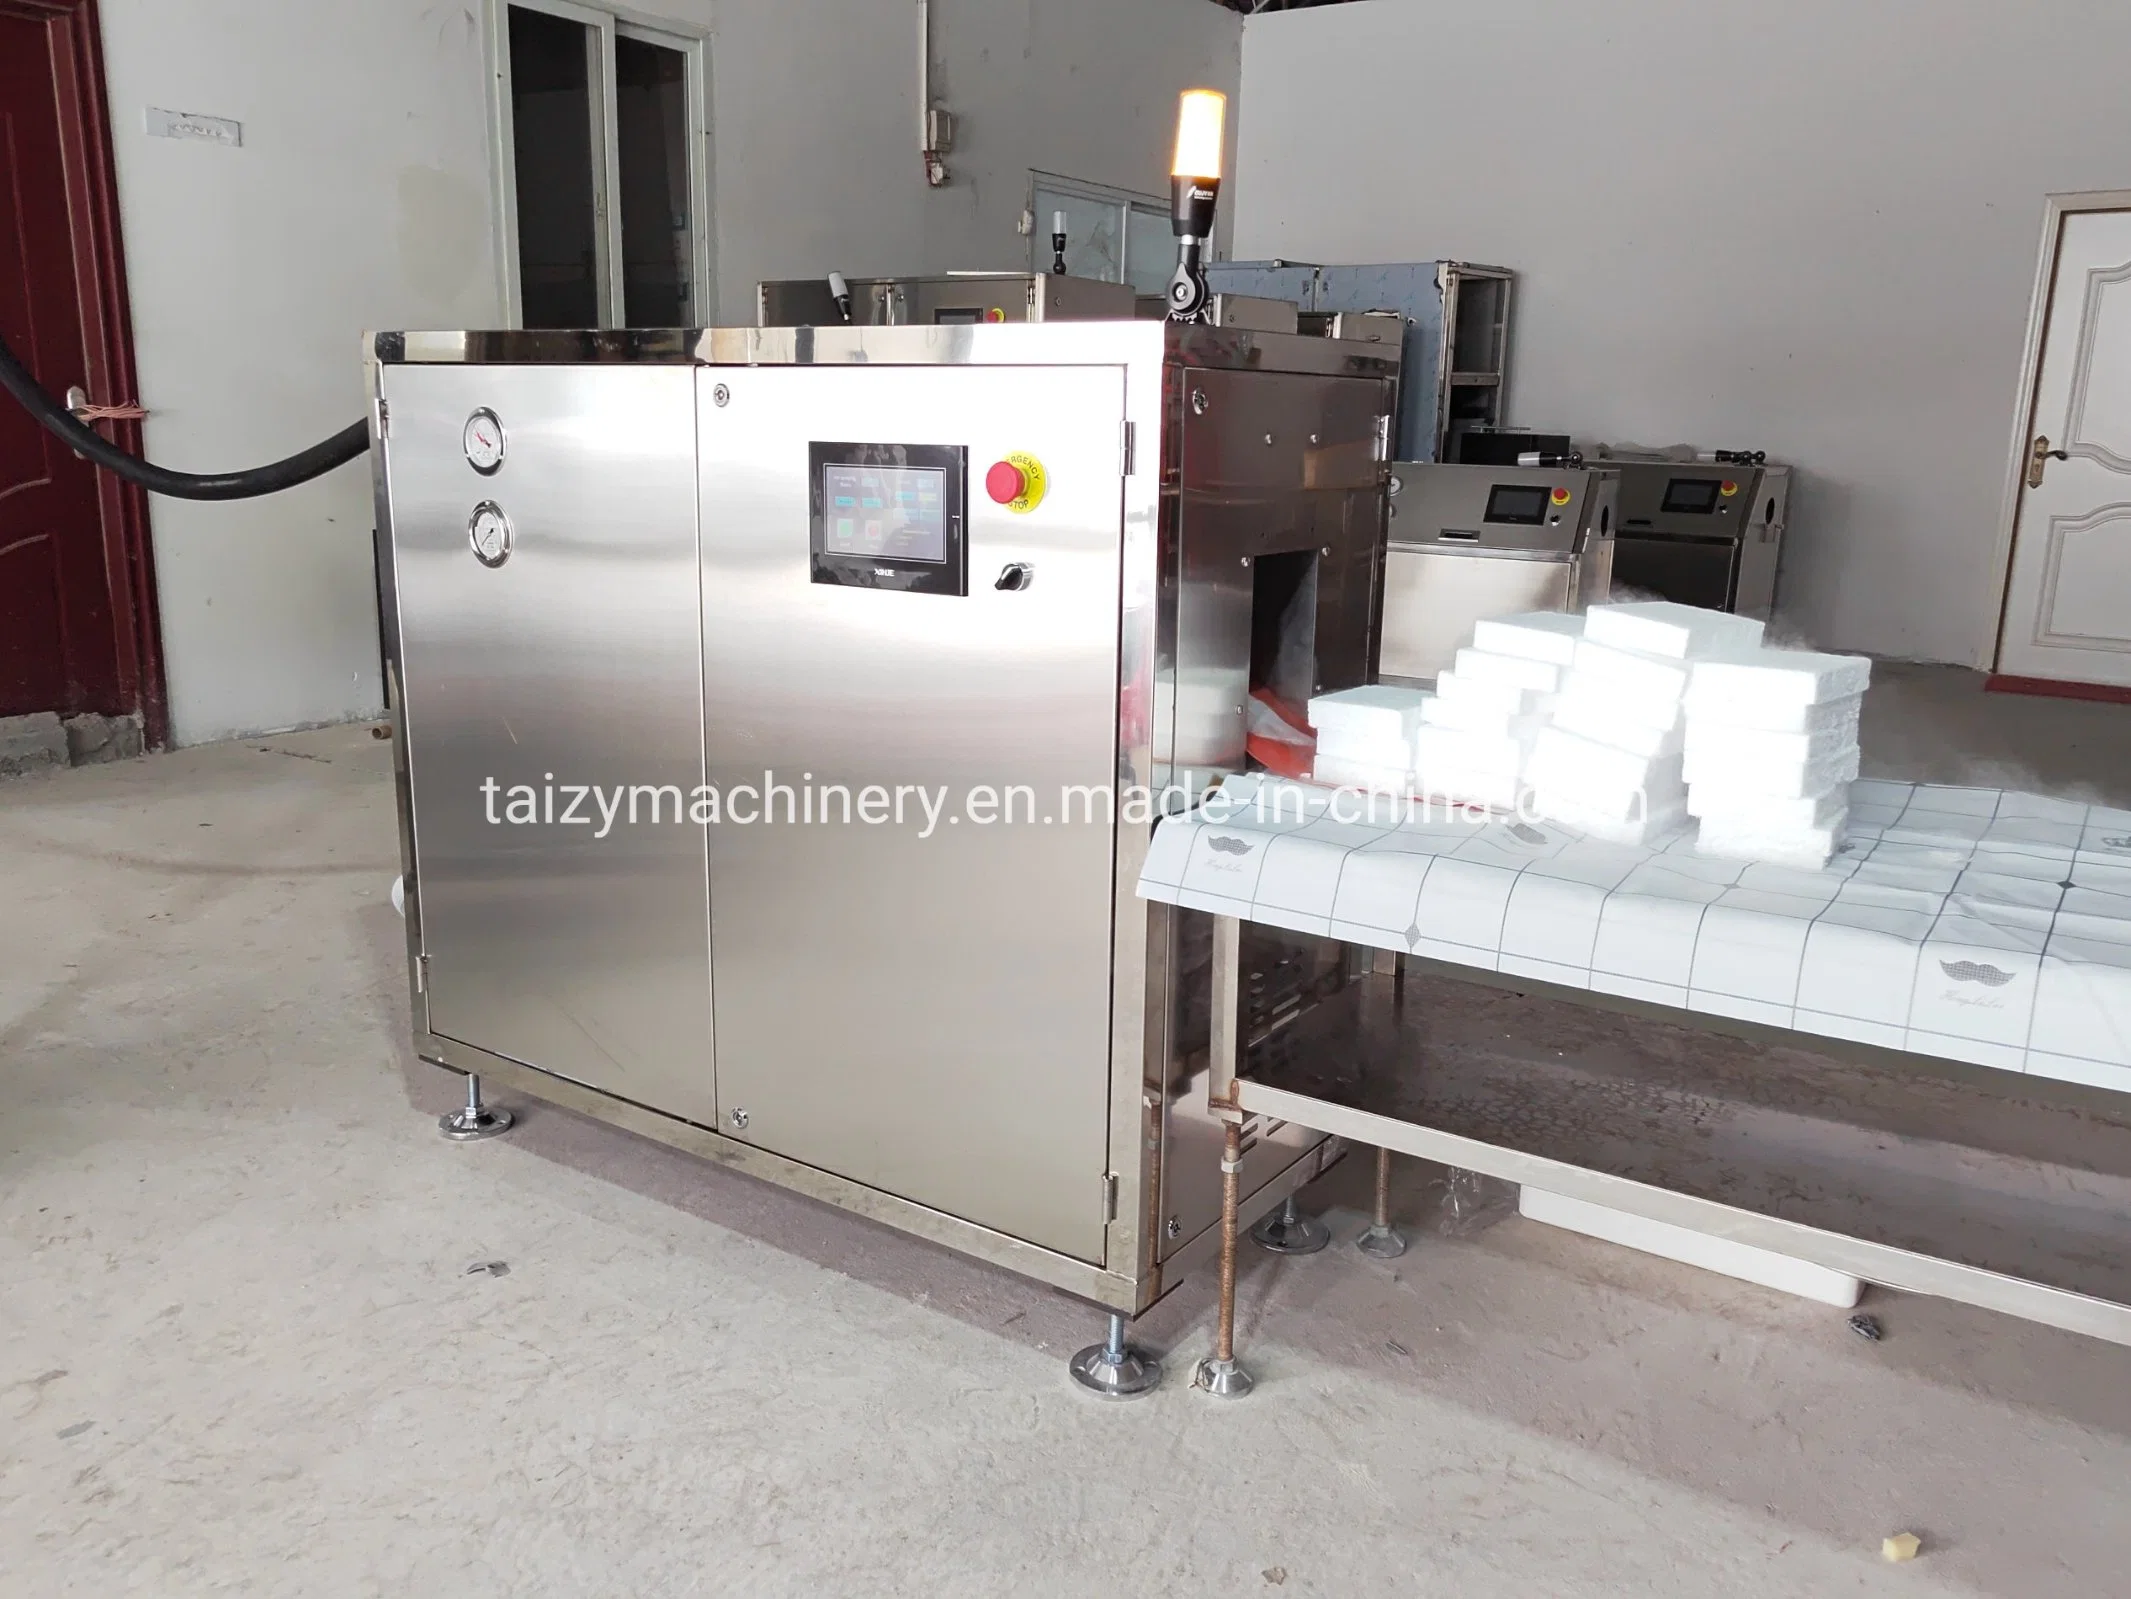 Usine 500 kg/h Cube Dry Ice Maker Machine à blocs de glace sèche à vendre.